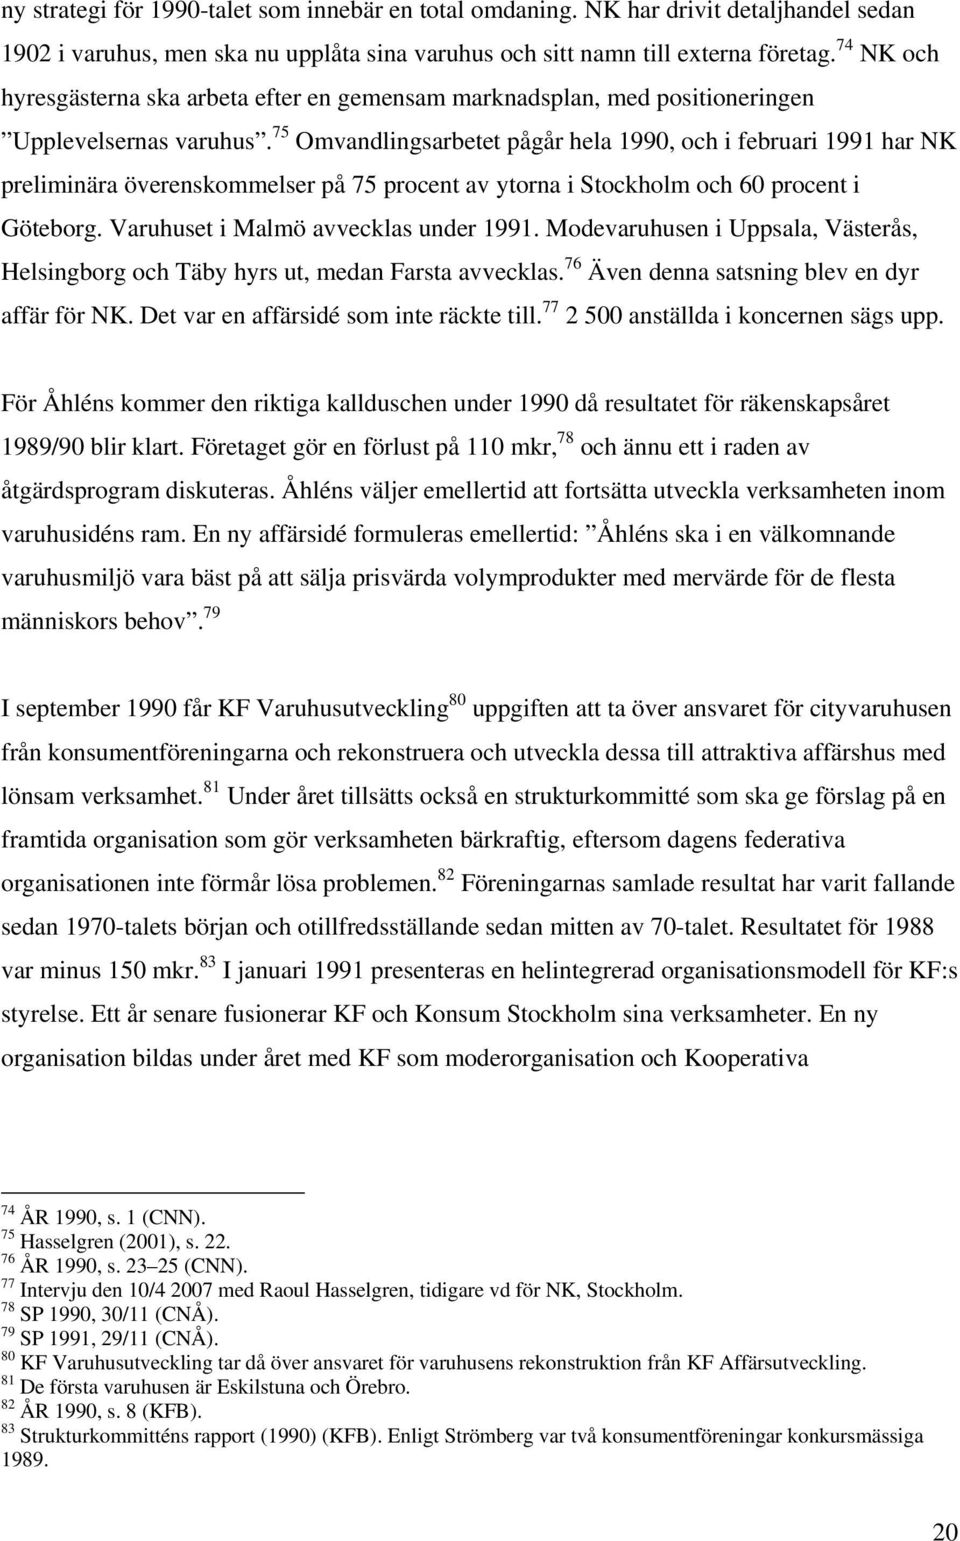 75 Omvandlingsarbetet pågår hela 1990, och i februari 1991 har NK preliminära överenskommelser på 75 procent av ytorna i Stockholm och 60 procent i Göteborg. Varuhuset i Malmö avvecklas under 1991.